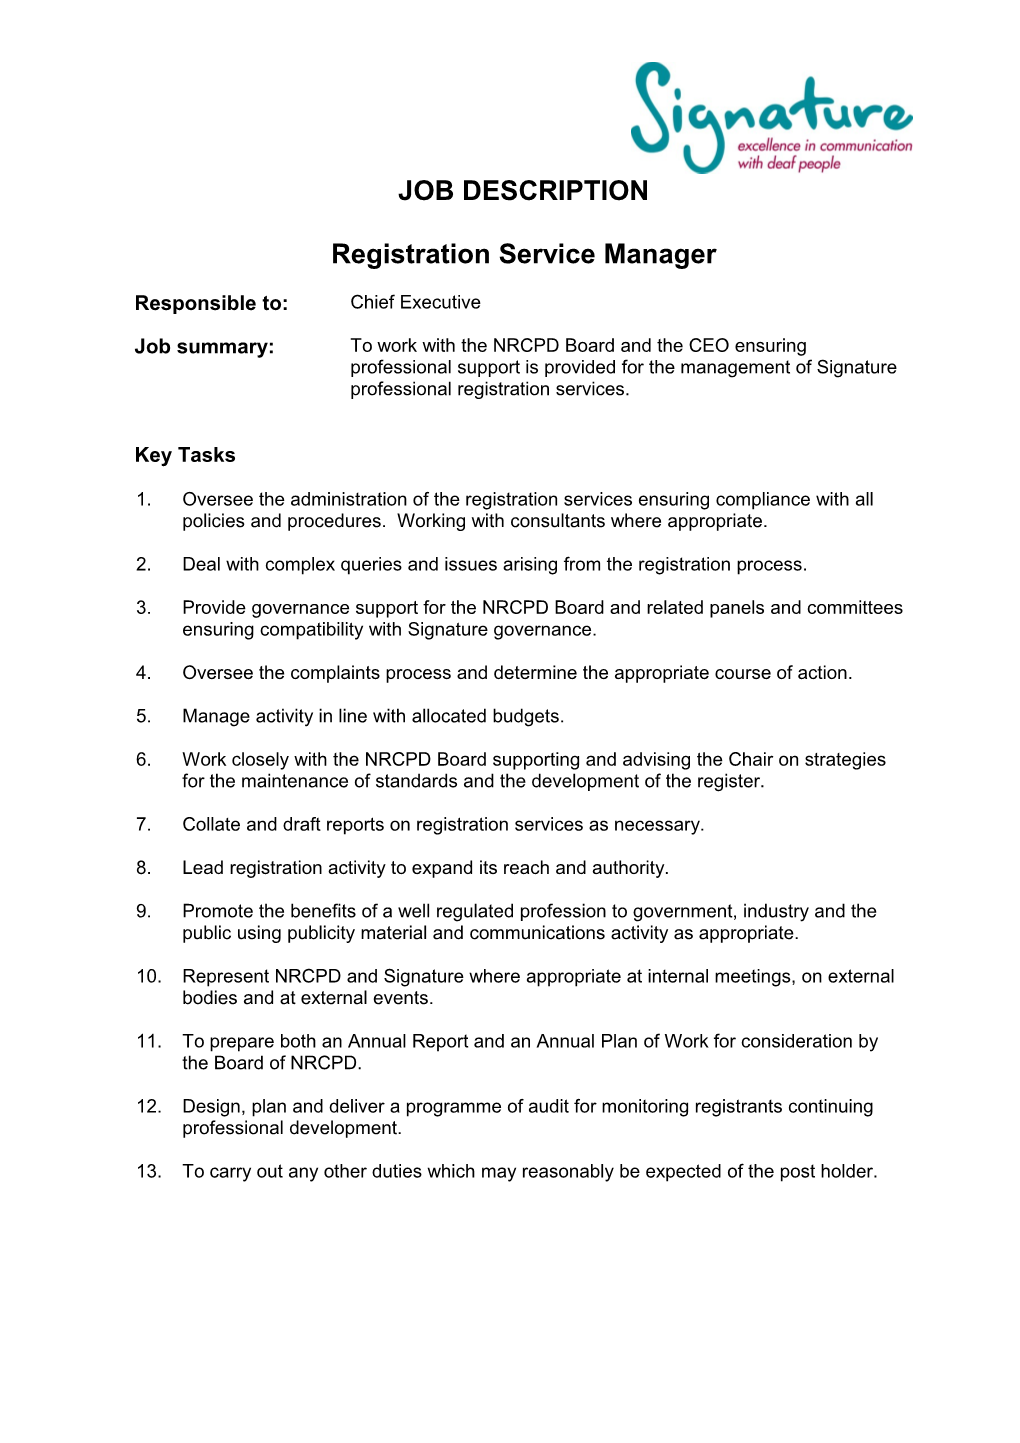 Registration Service Manager